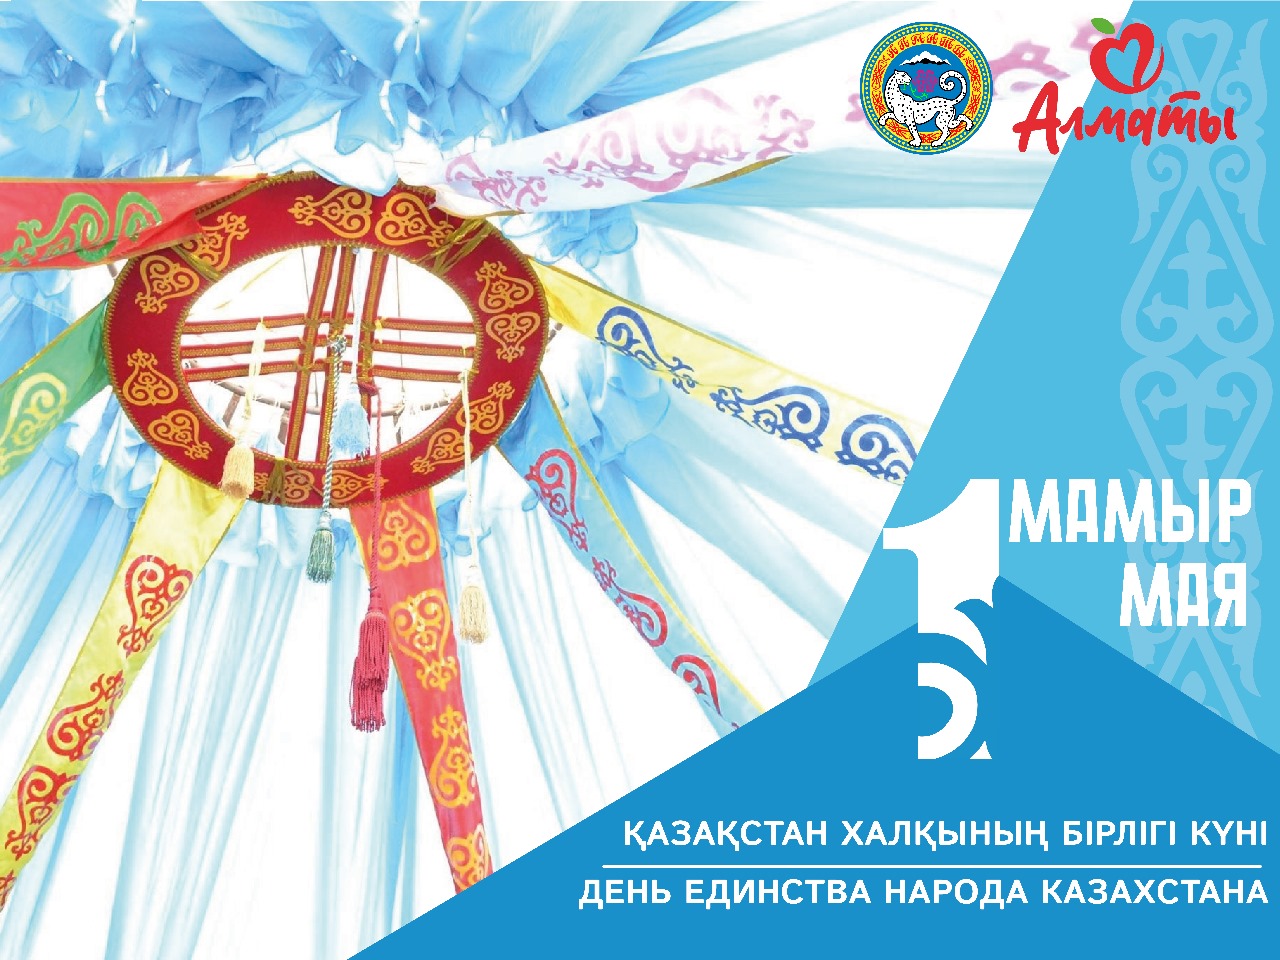 Праздничный концерт в честь «Праздника единства народа Казахстана».